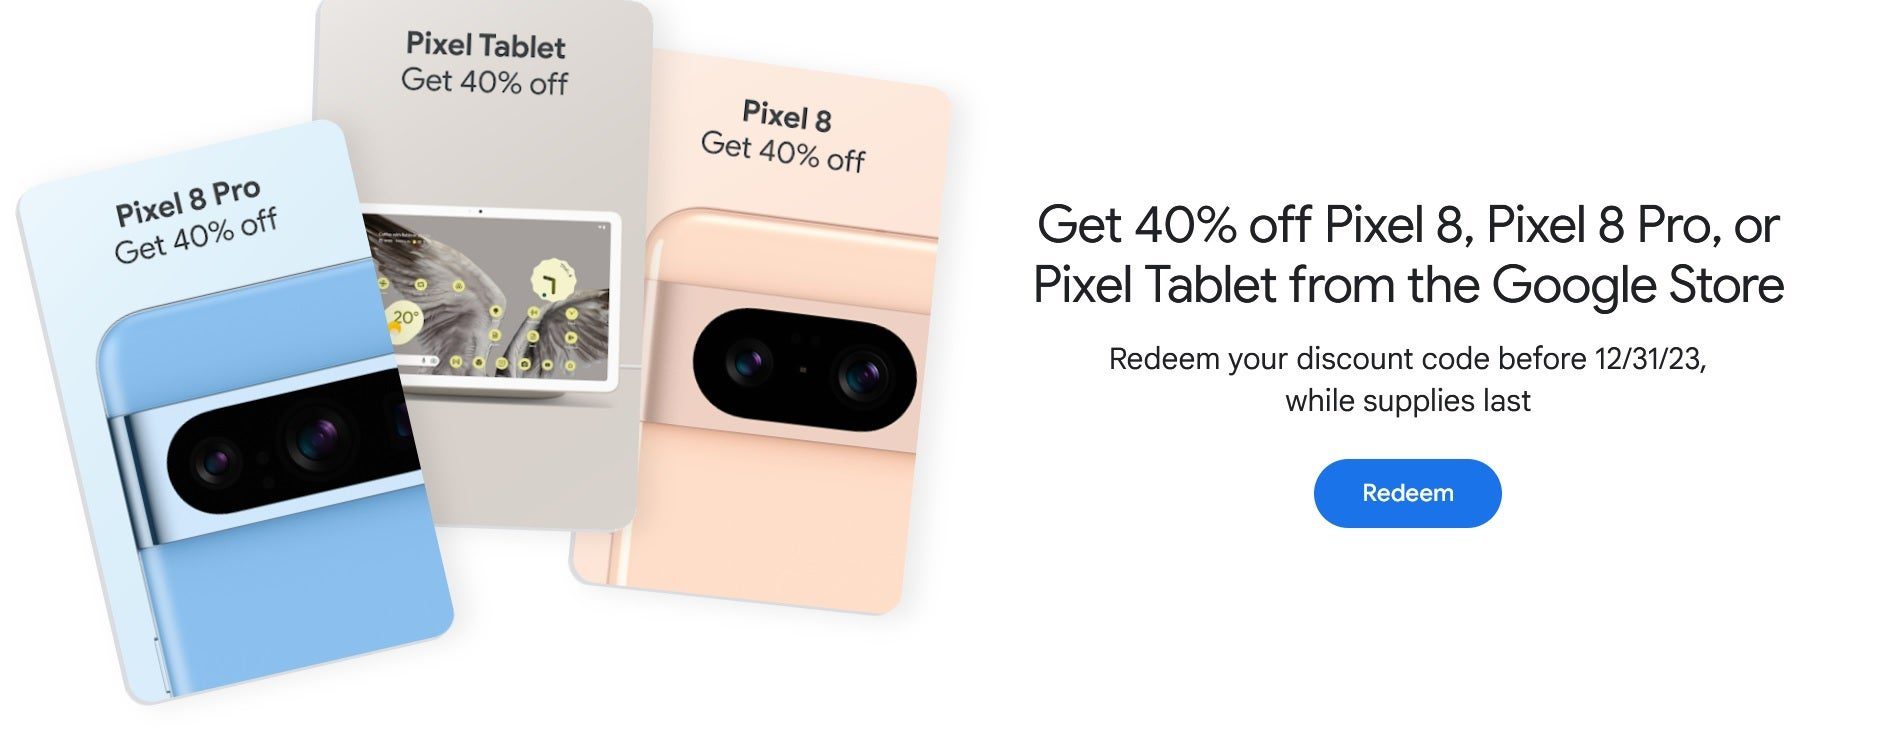 Puede ahorrar un 40 % en Pixel 8, Pixel 8 Pro o Pixel Tablet si es miembro Gold, Platinum o Diamond de Google Play Points. Los miembros de Google Play Points Gold y superiores pueden obtener un 40 % de descuento en la serie Pixel 8 y Pixel. tableta